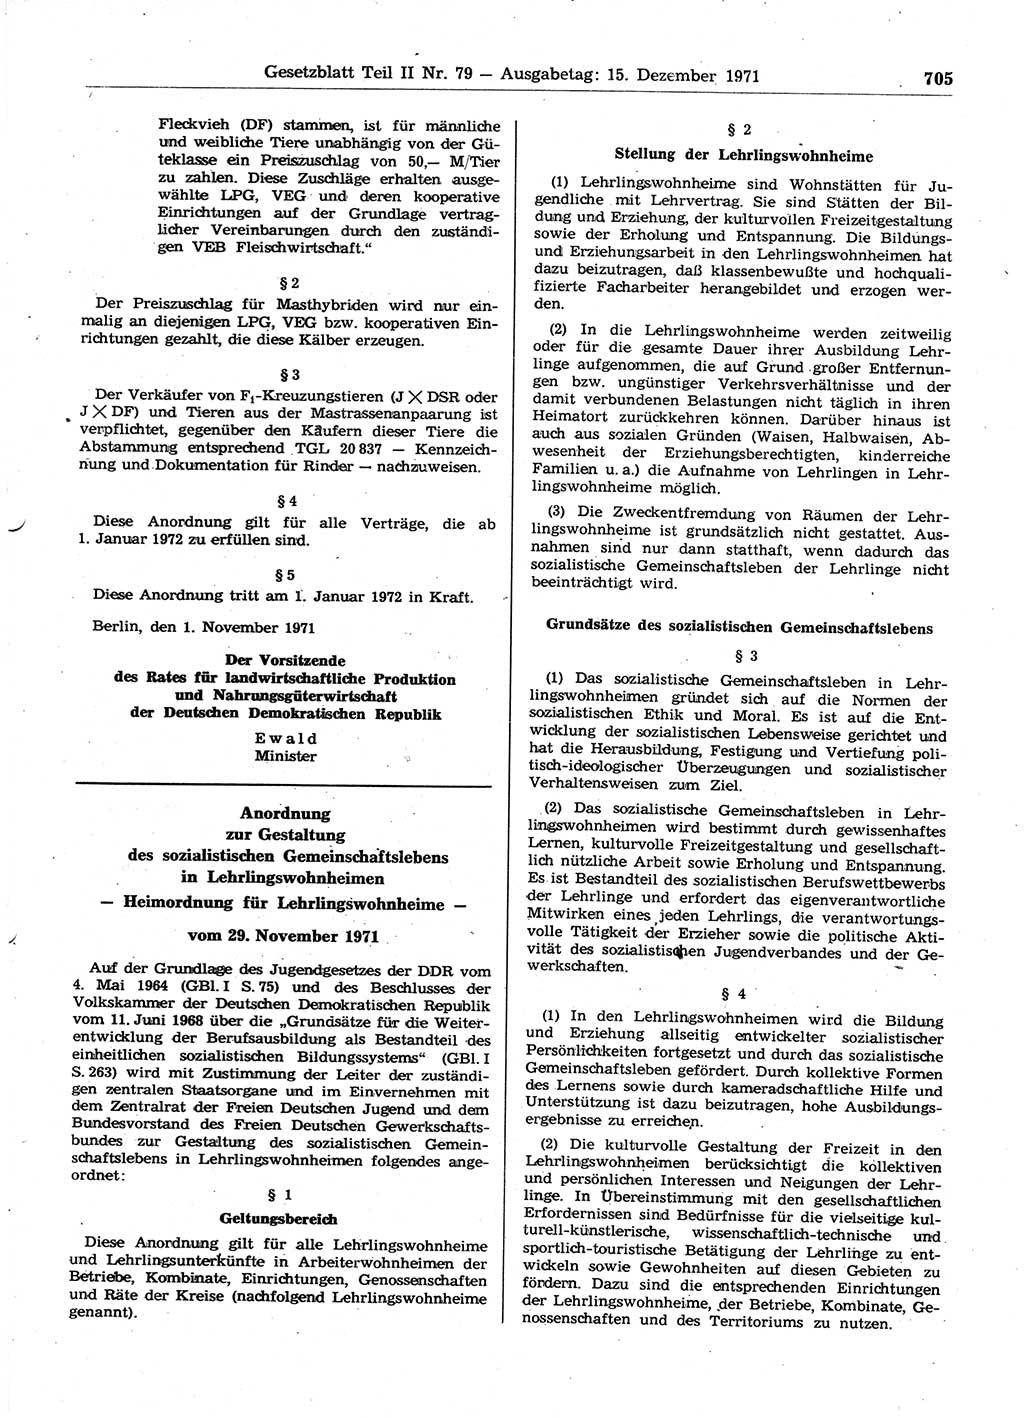 Gesetzblatt (GBl.) der Deutschen Demokratischen Republik (DDR) Teil ⅠⅠ 1971, Seite 705 (GBl. DDR ⅠⅠ 1971, S. 705)